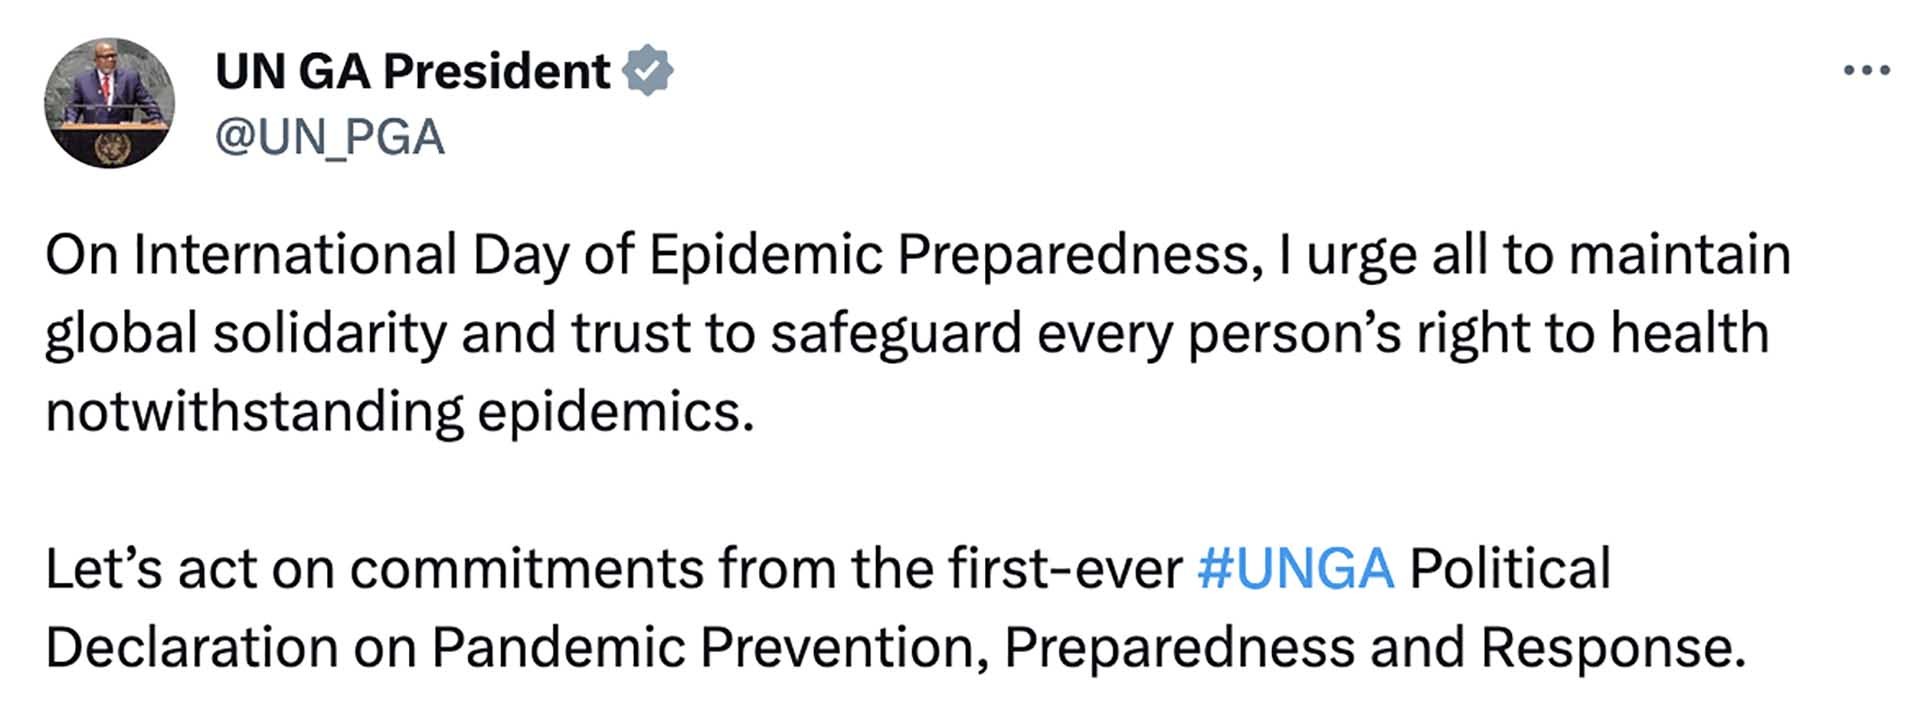 Chủ tịch Đại hội đồng Liên hợp quốc Dennis Francis gửi thông điệp nhân dịp Ngày quốc tế sẵn sàng phòng chống dịch bệnh.